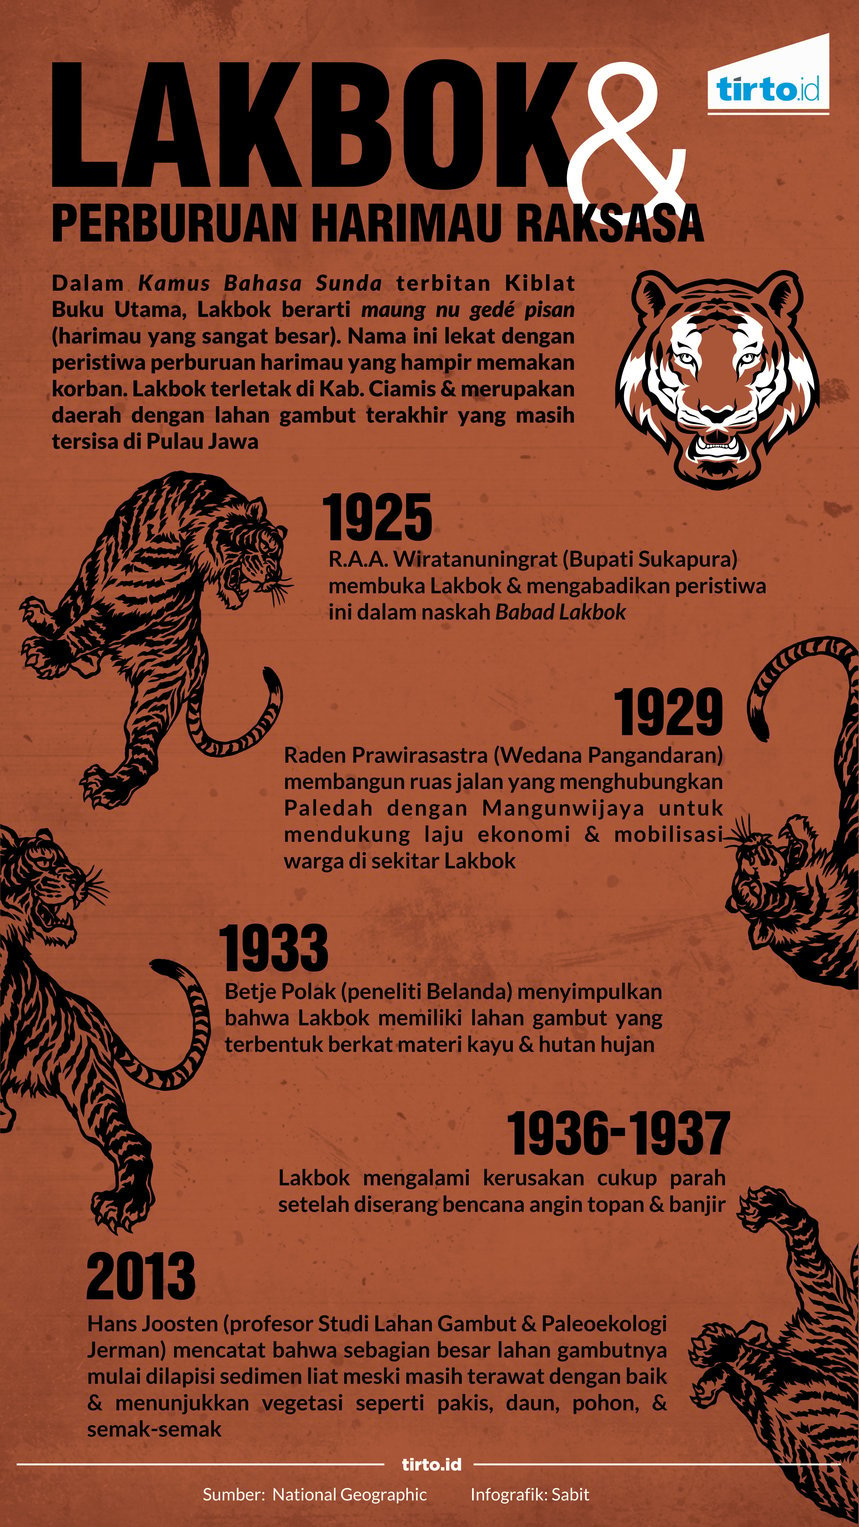 Infografik lakbok dan perburuan harimau 